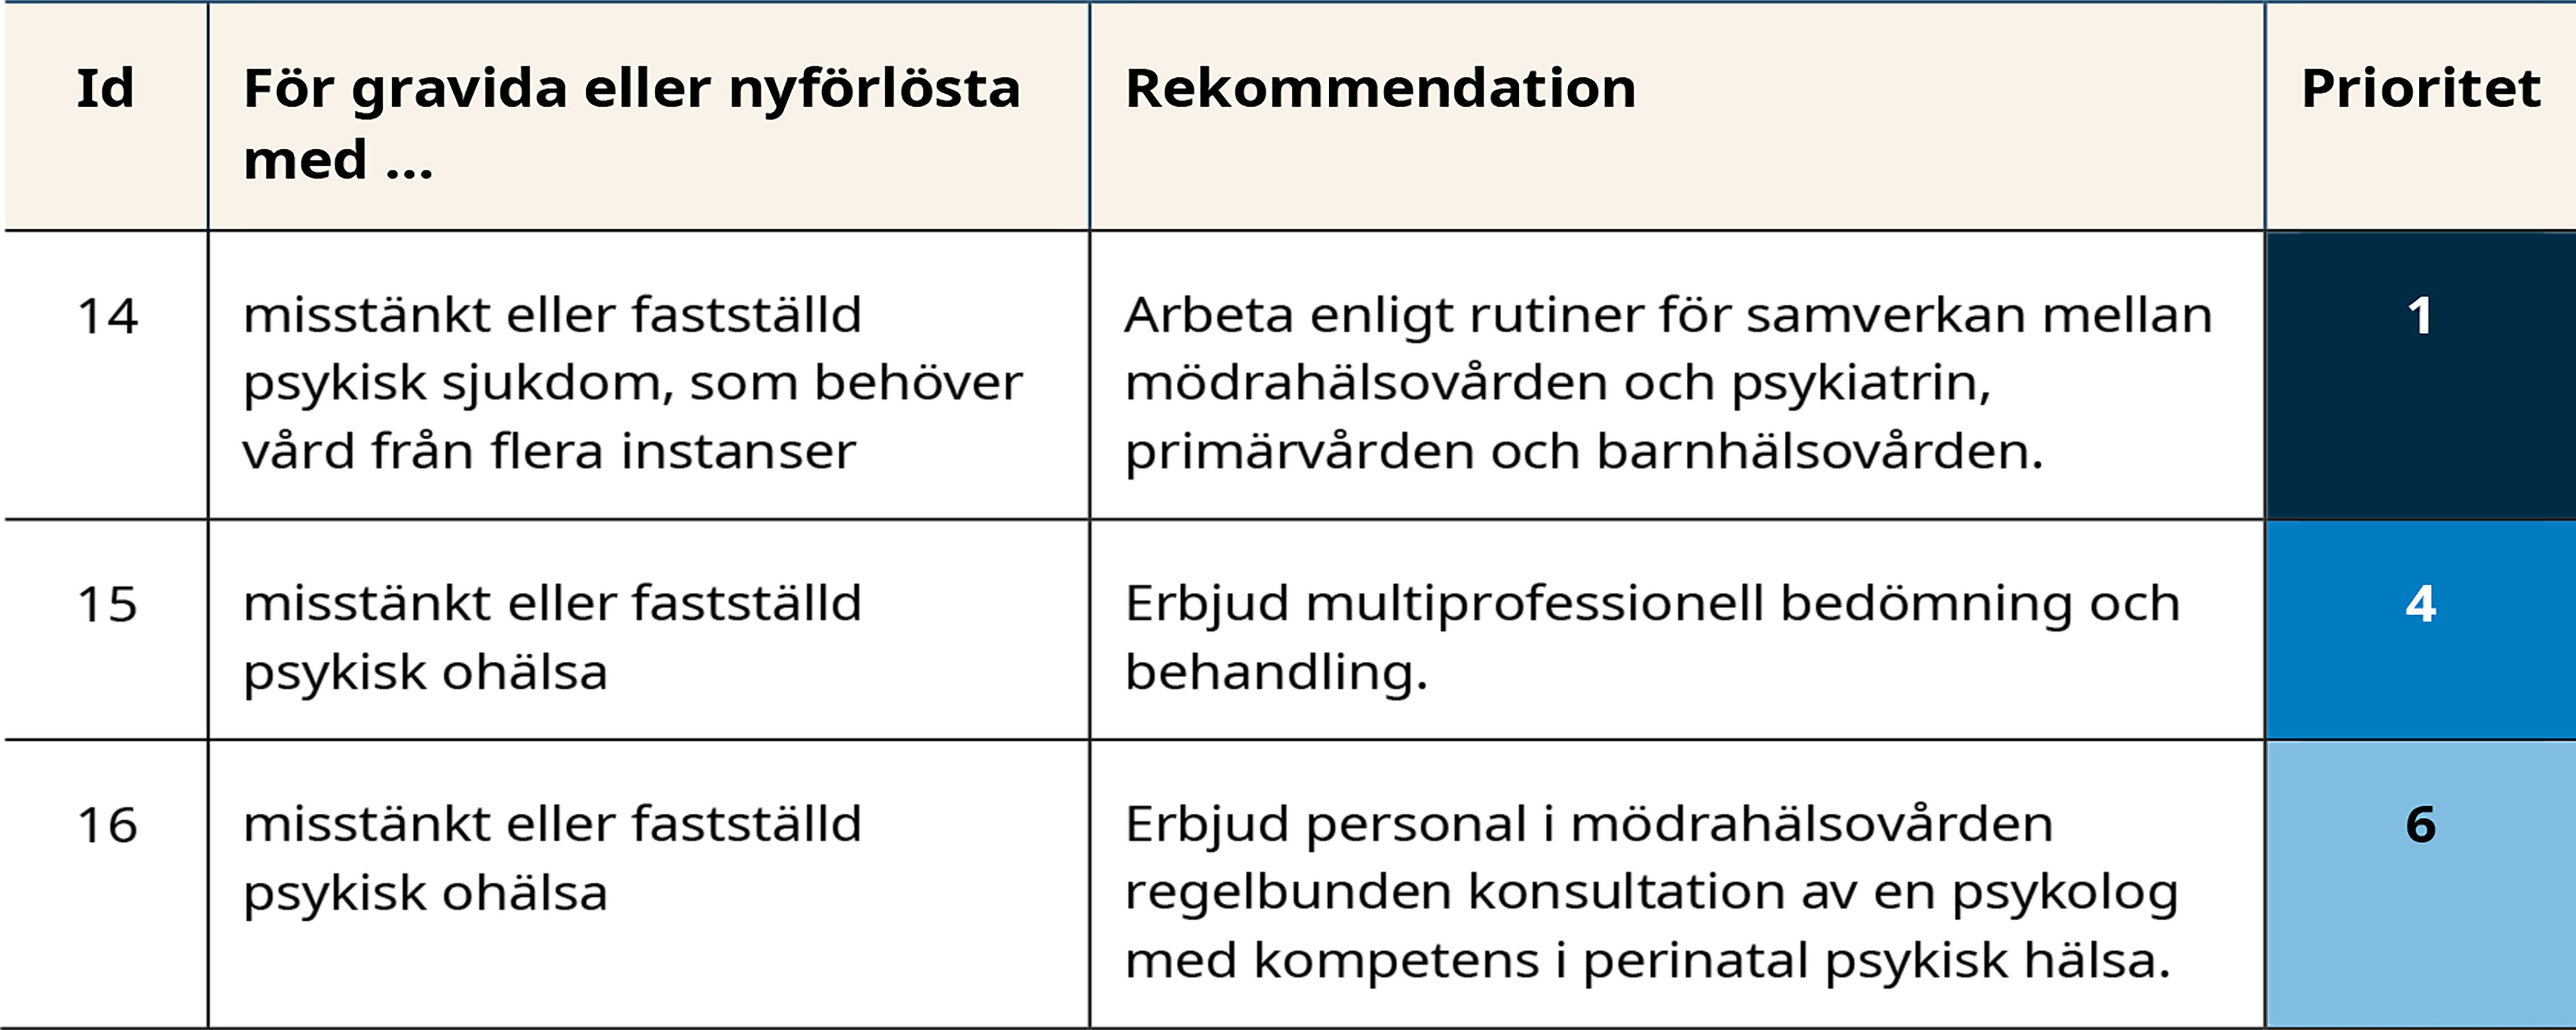 Tabell med rekommendationer om psykisk ohälsa. Tabellen beskrivs i följande syntolkning.